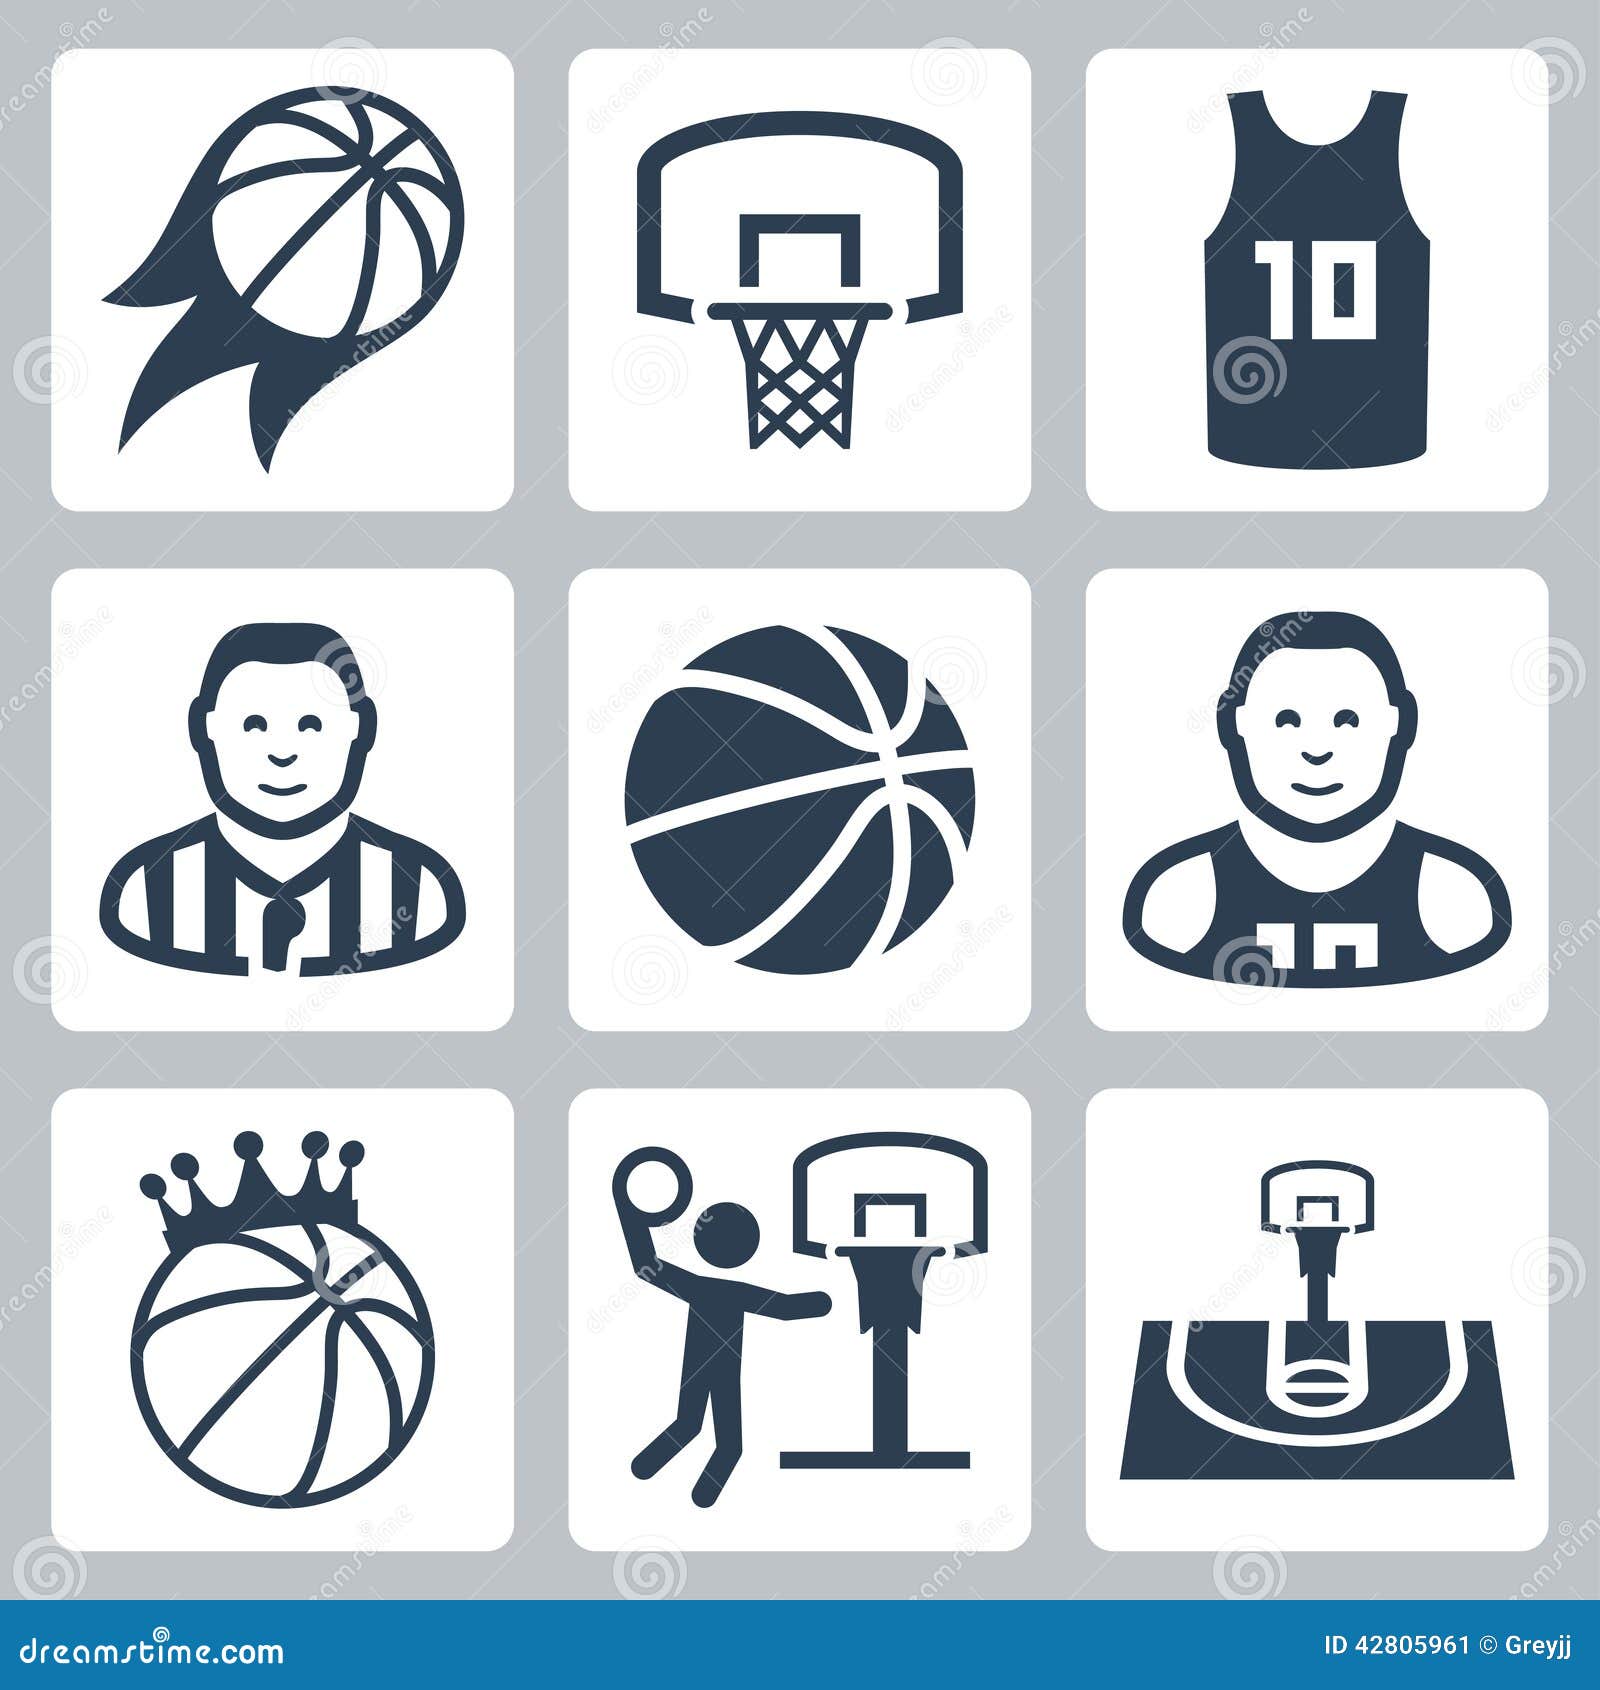 Basketball board sport icon vector illustration graphic design